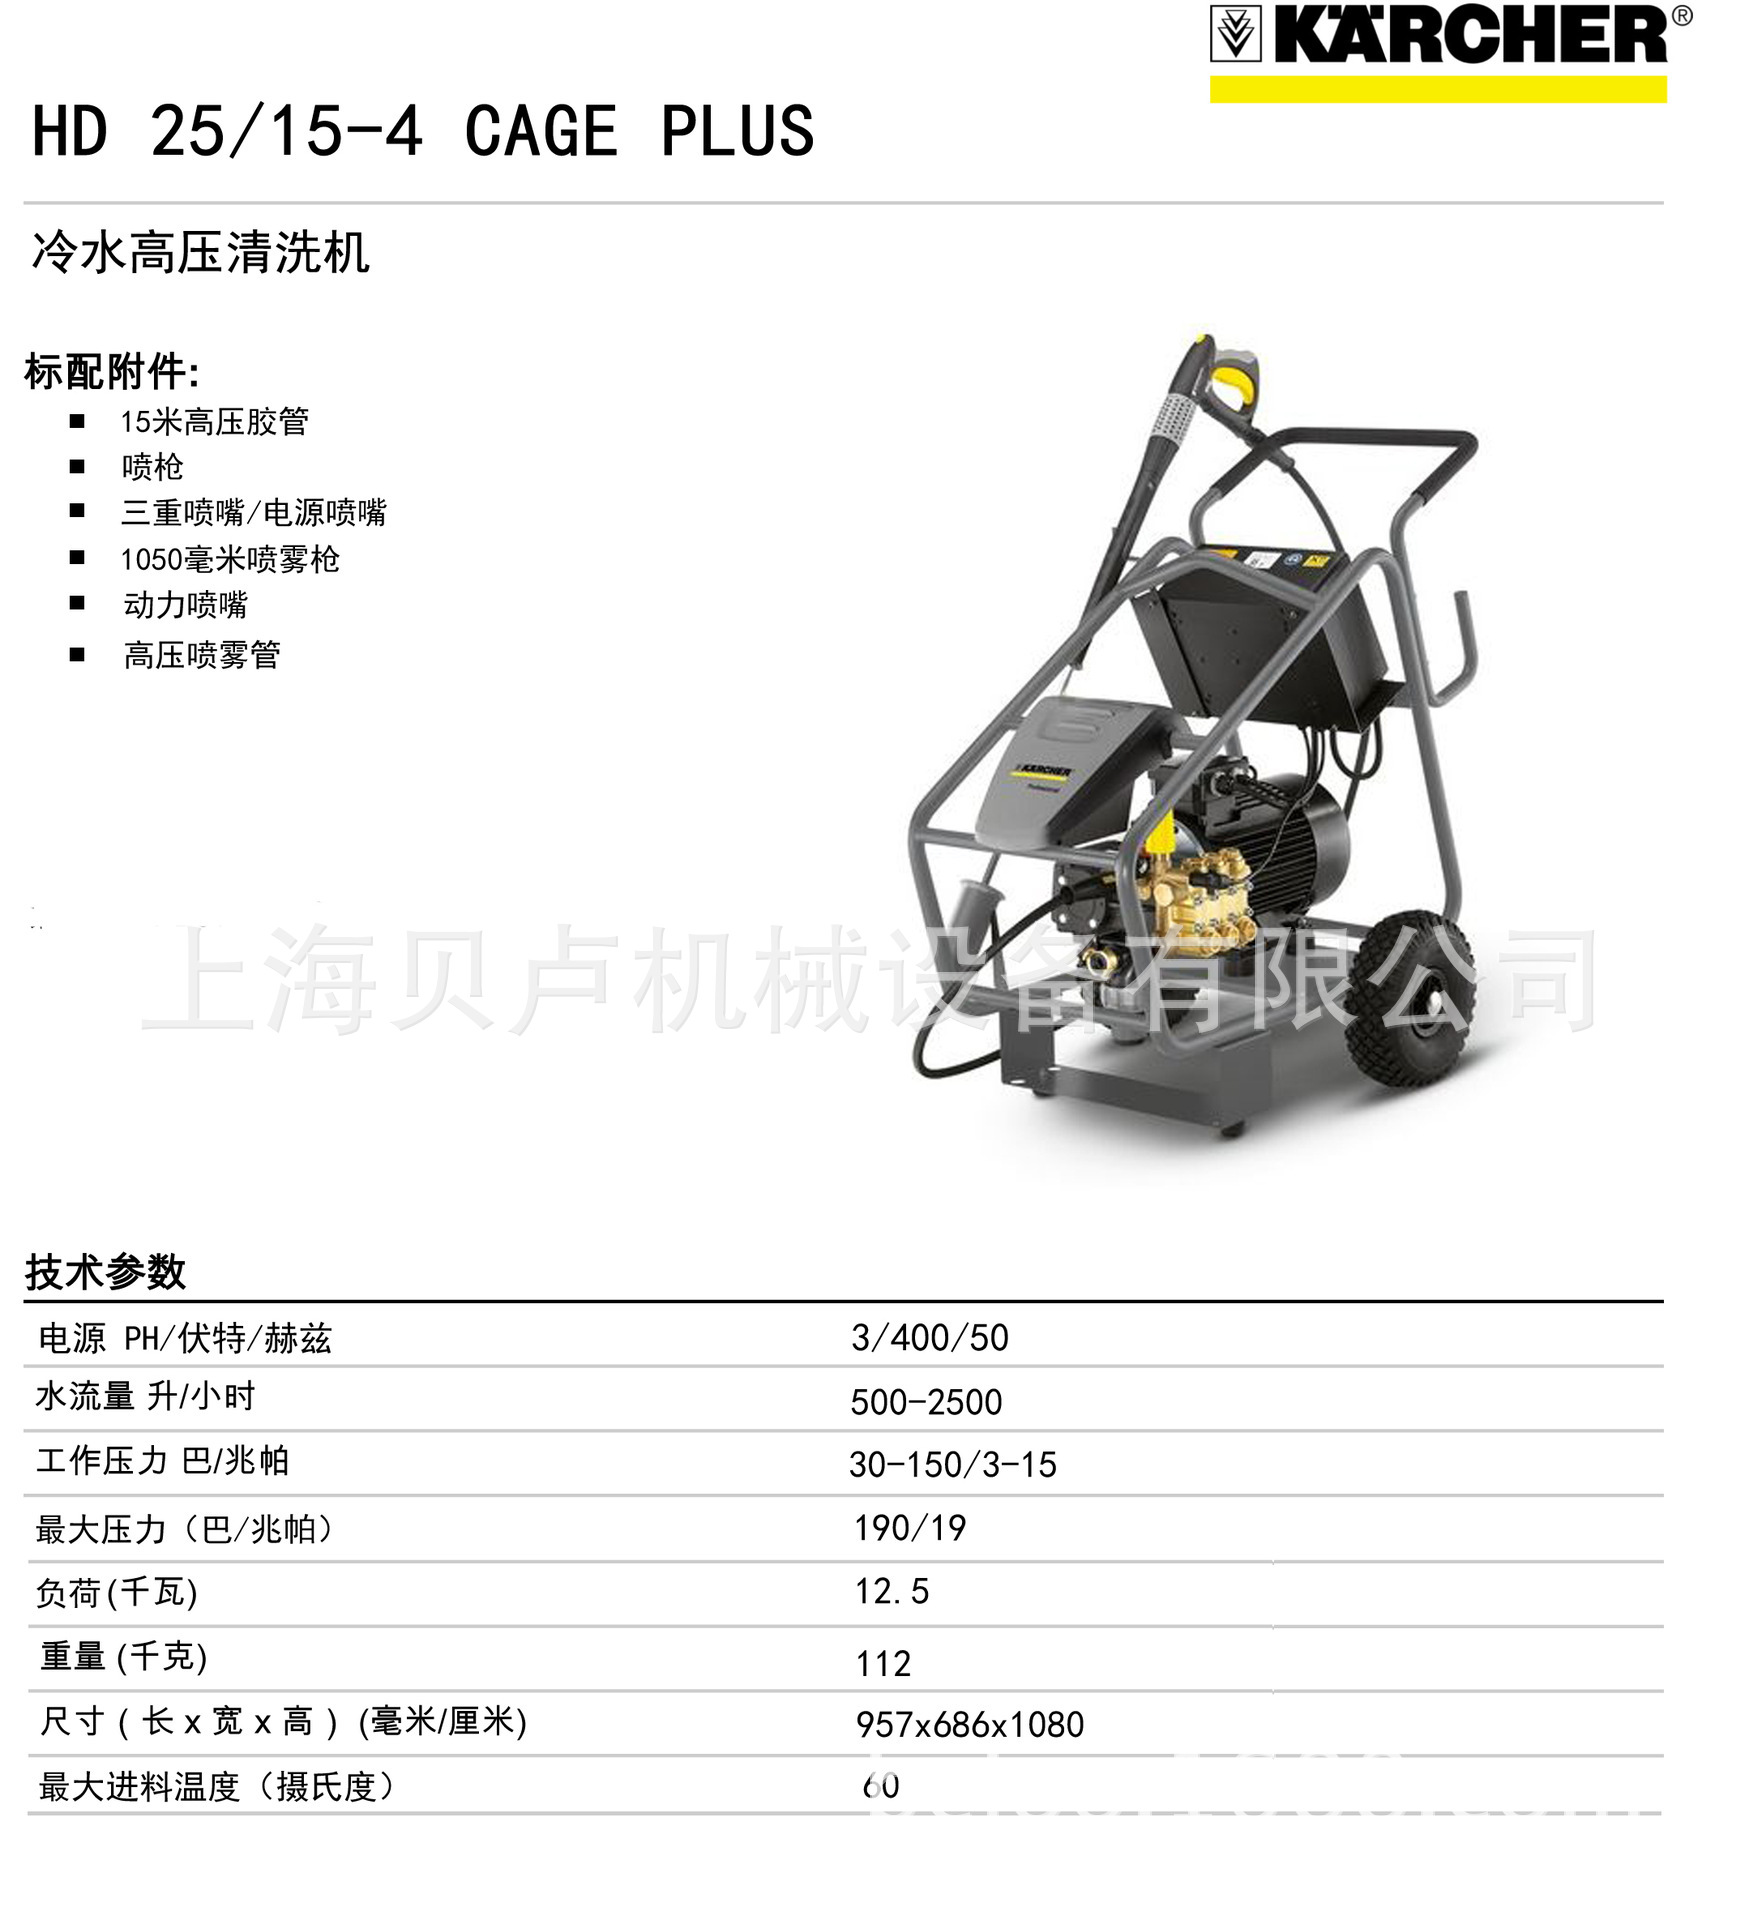 进口 HD 25/15-4 Cage Plus 上海高压冷水清洗机